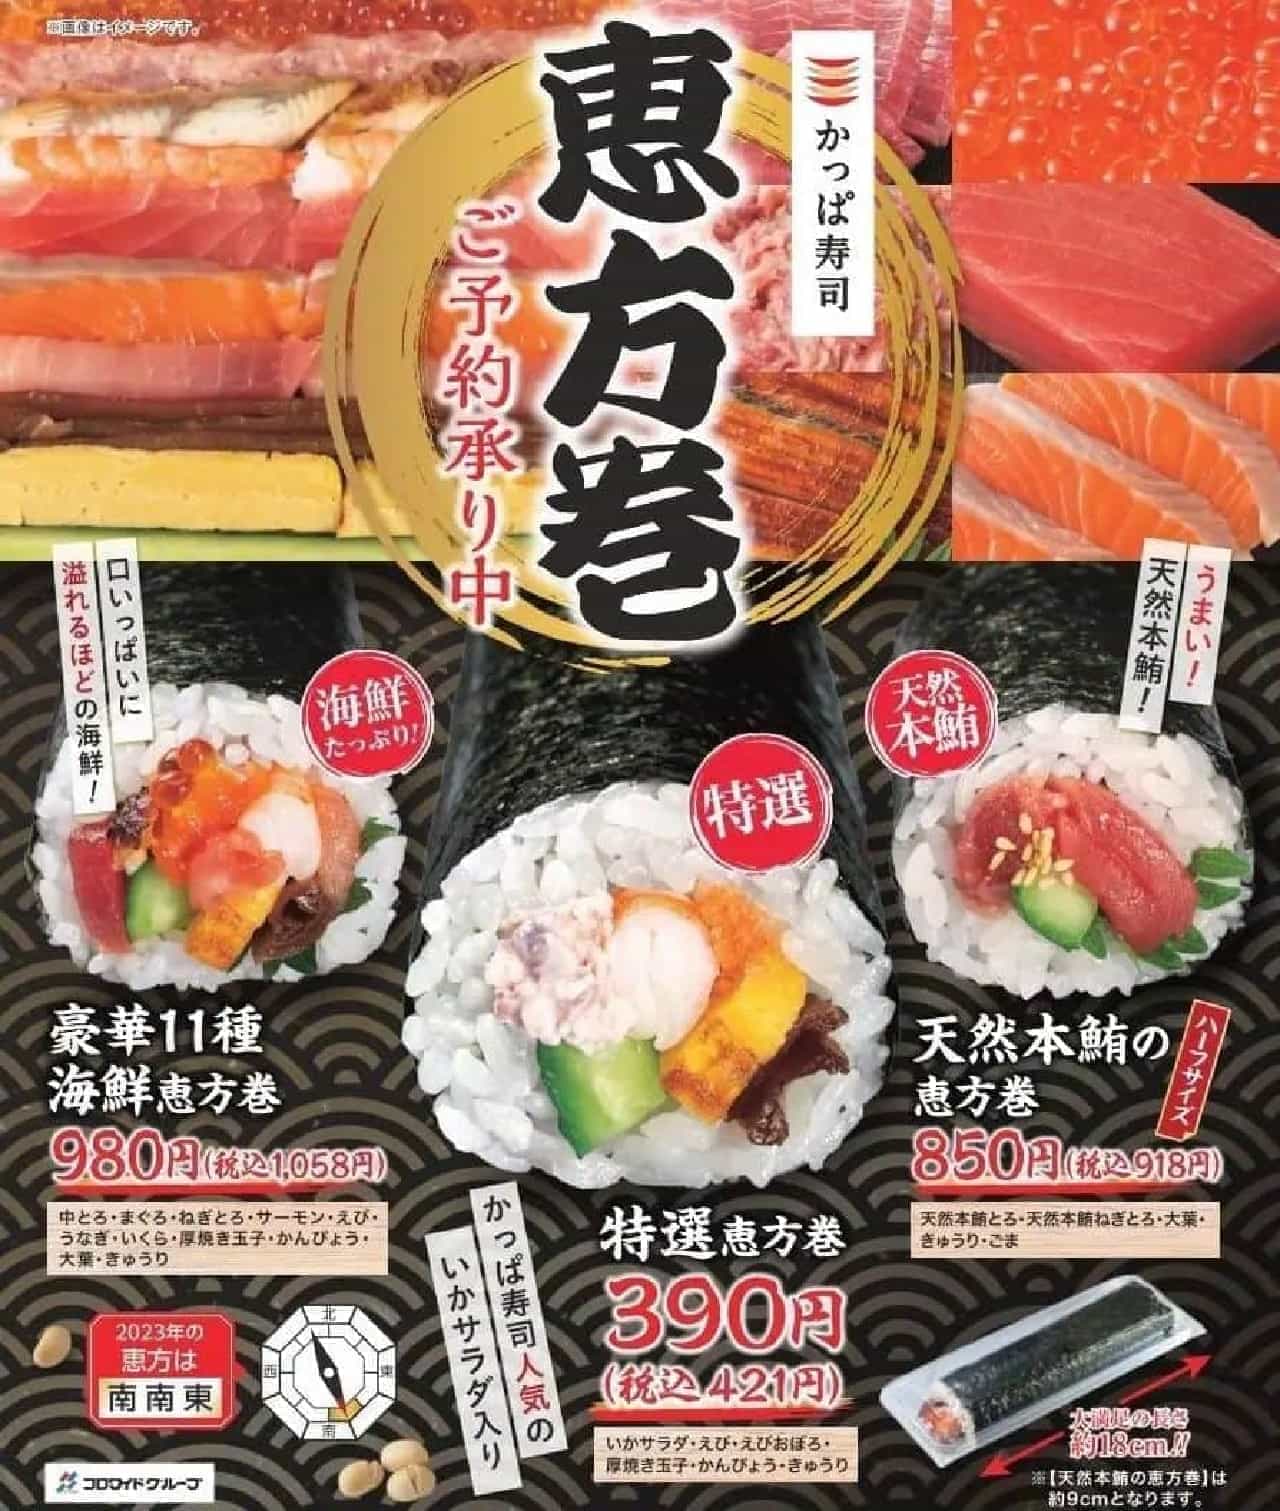 かっぱ寿司「特選恵方巻」「天然本鮪の恵方」「豪華11種海鮮恵方巻」